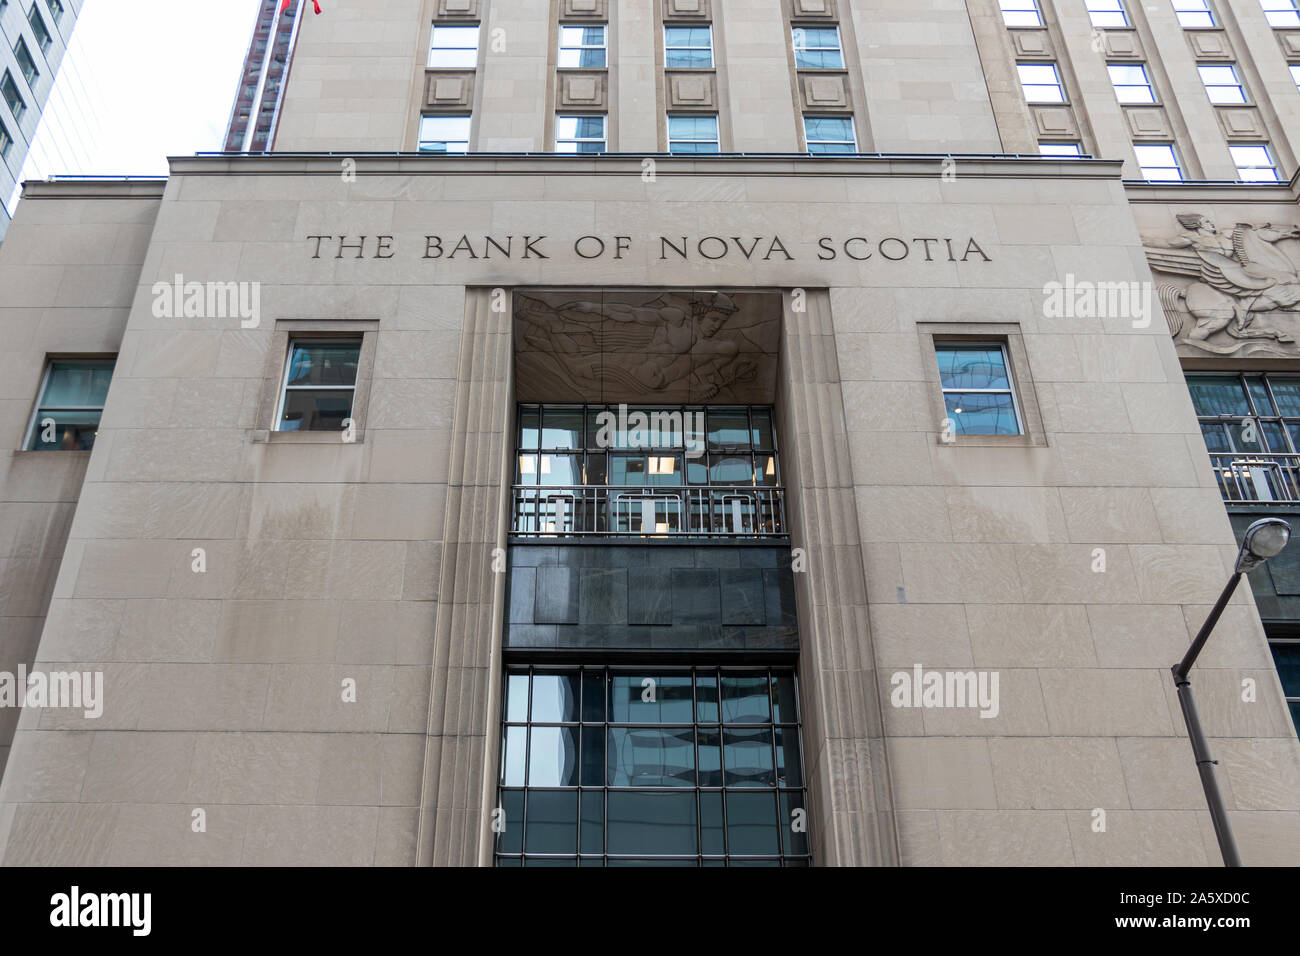 Devant le siège social de la Banque de Nouvelle-Écosse, au centre-ville de Toronto. Banque D'Images